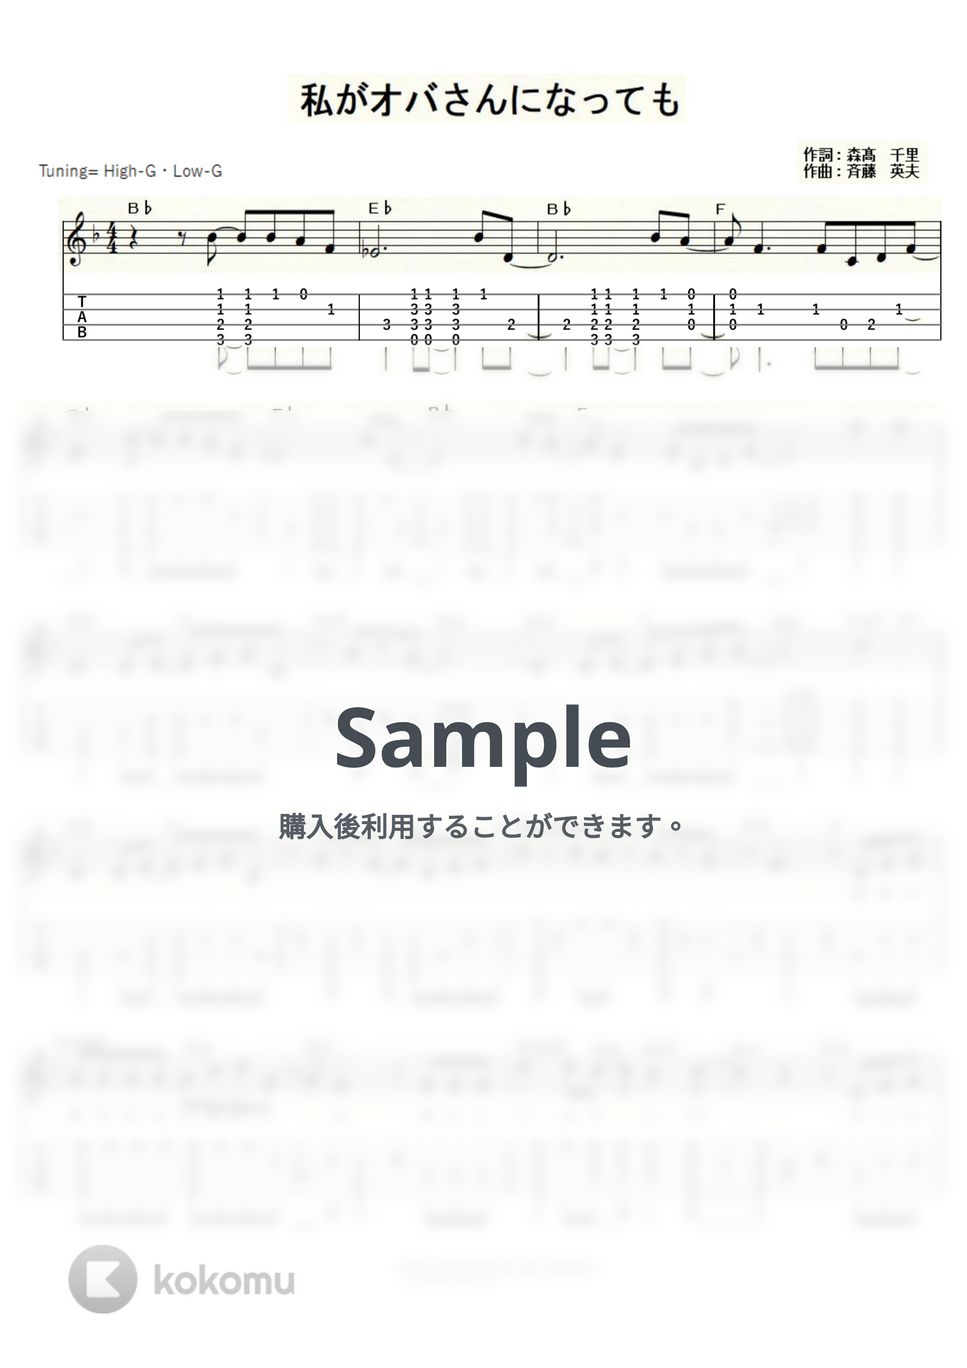 森高千里 - 私がオバさんになっても (ｳｸﾚﾚｿﾛ/High-G・Low-G/中級) by ukulelepapa